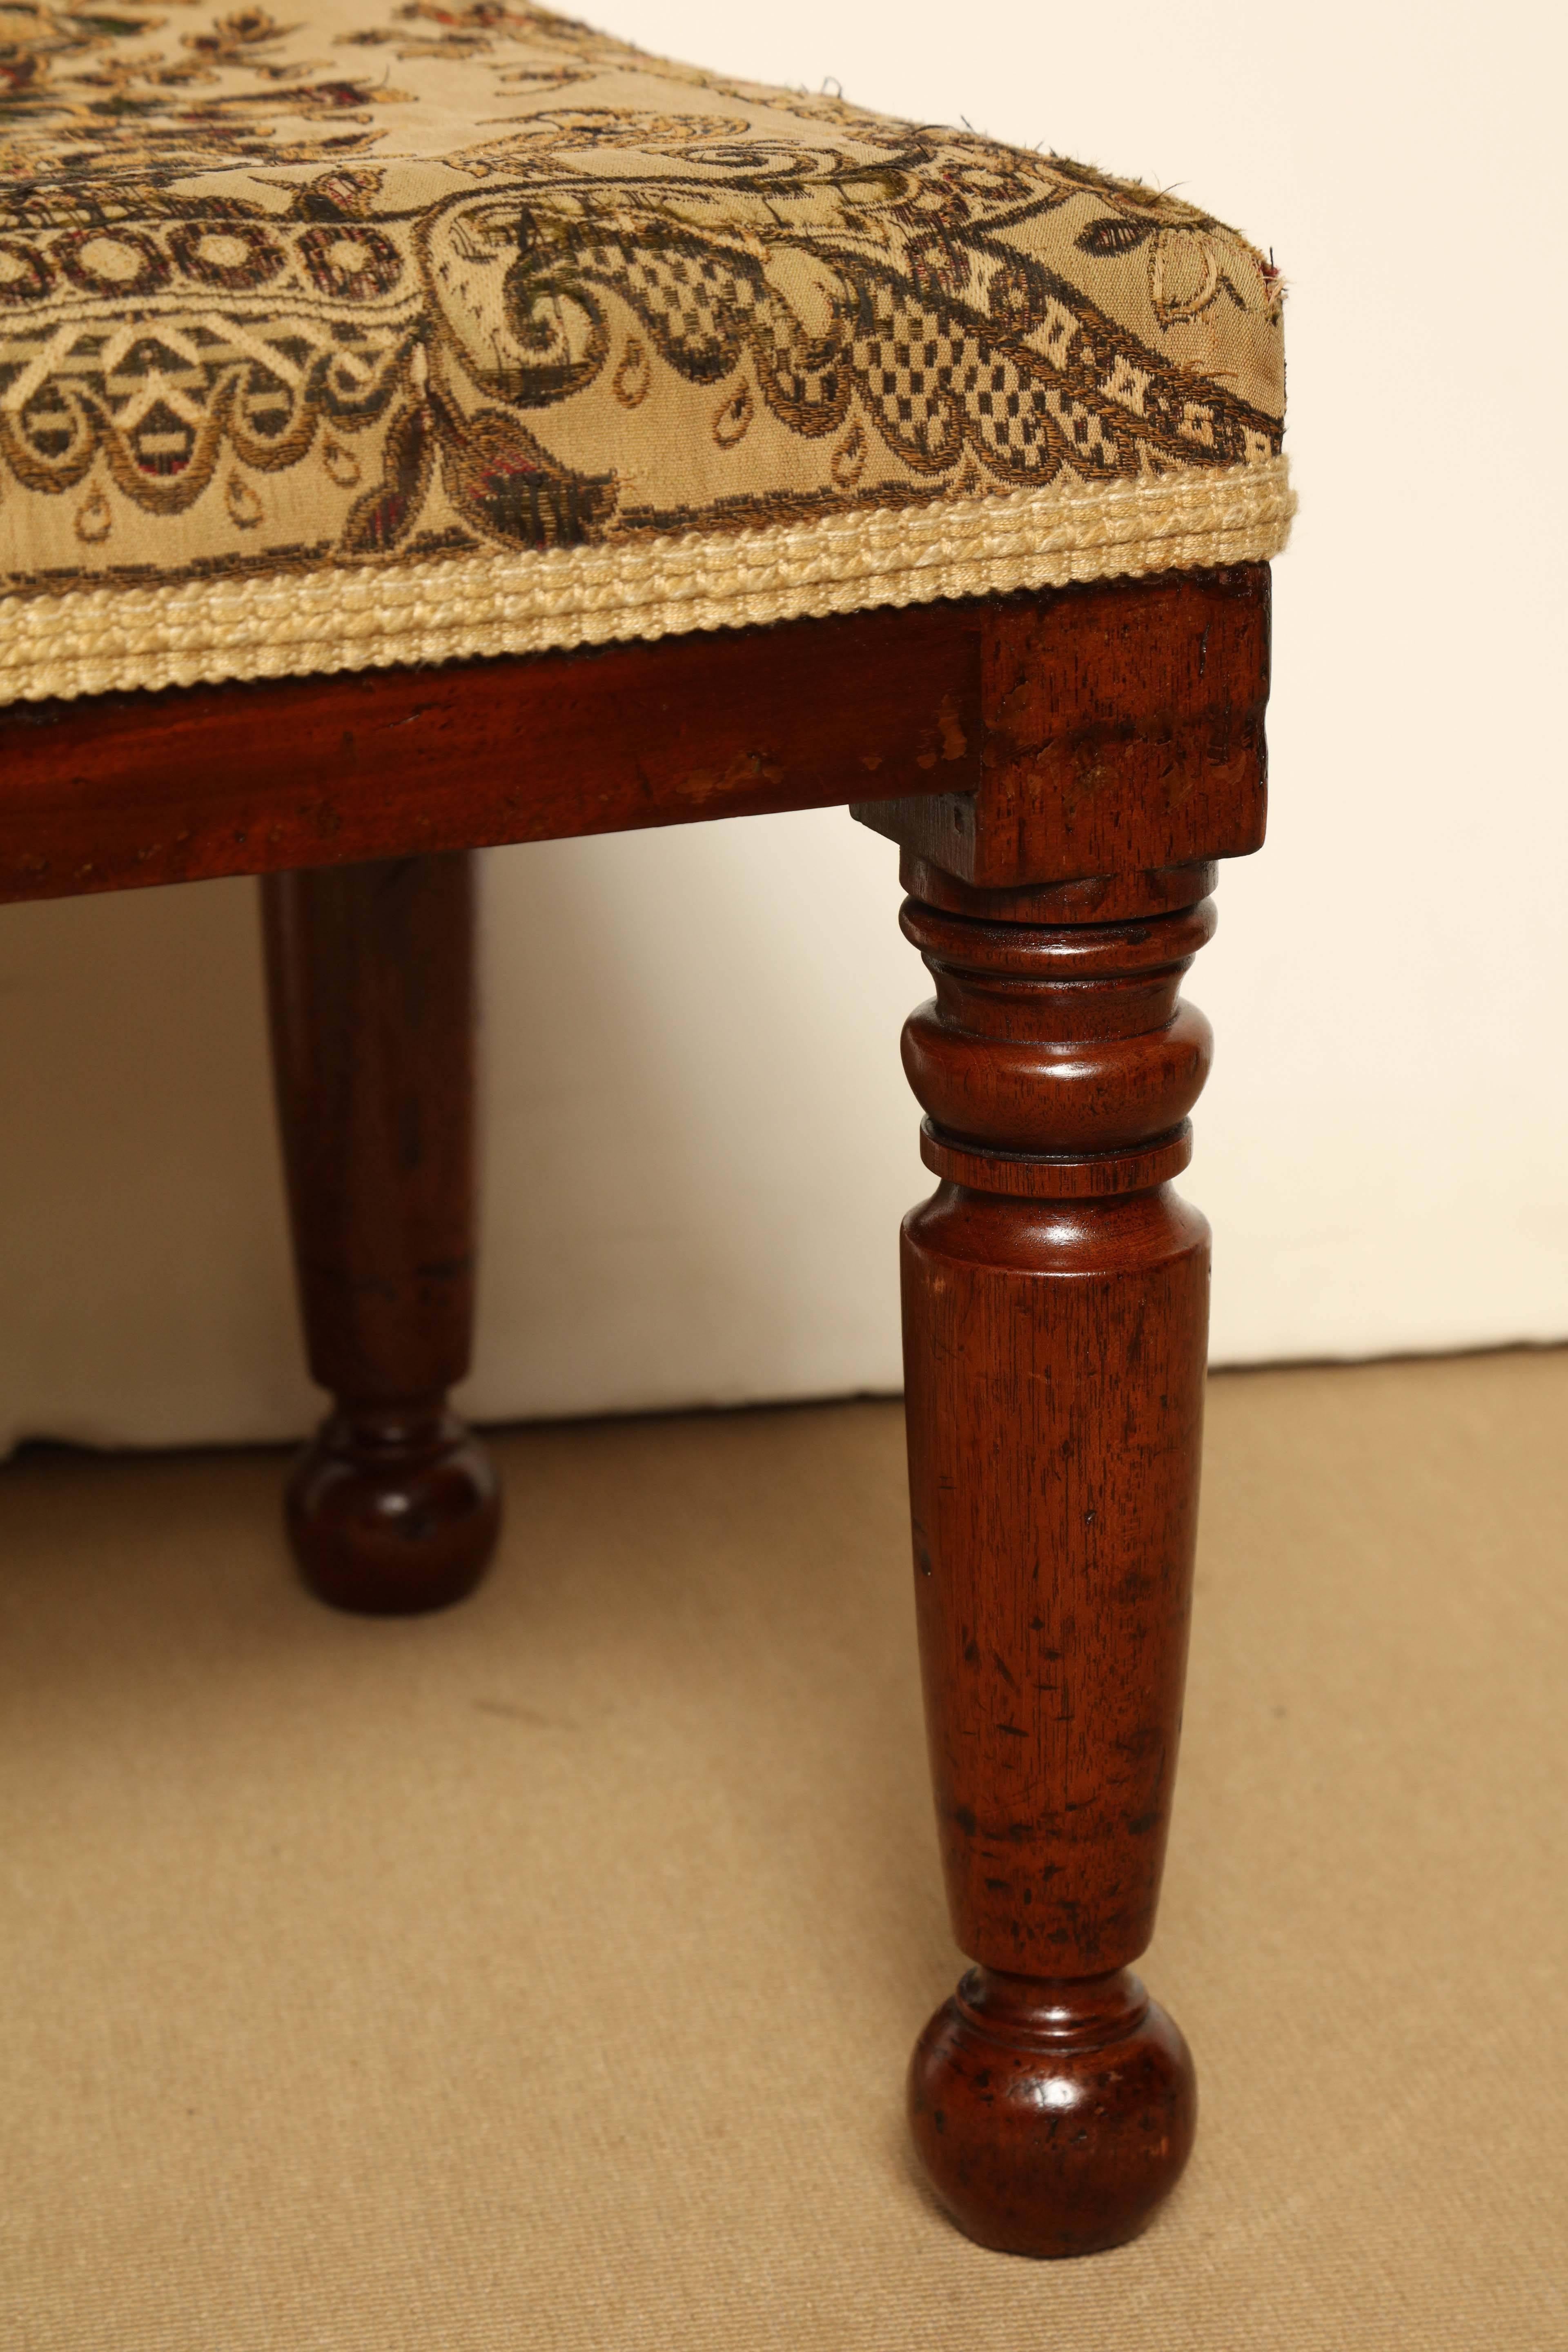 Mid-19th century English, mahogany stool.